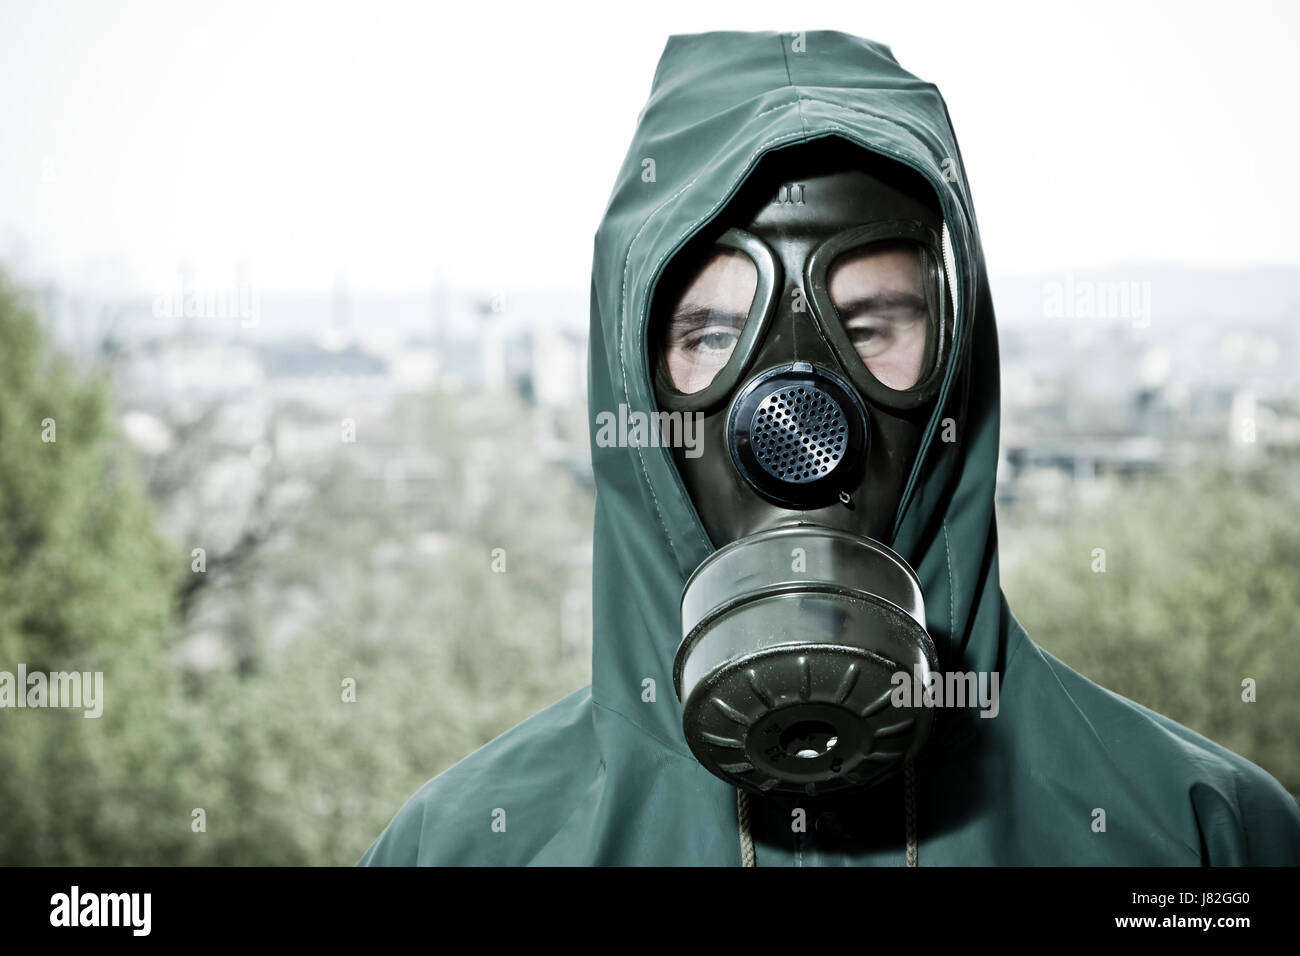 Protection respiratoire en cas de catastrophe nucléaire homme masque à gaz fumée fumer fume fume industrie Banque D'Images